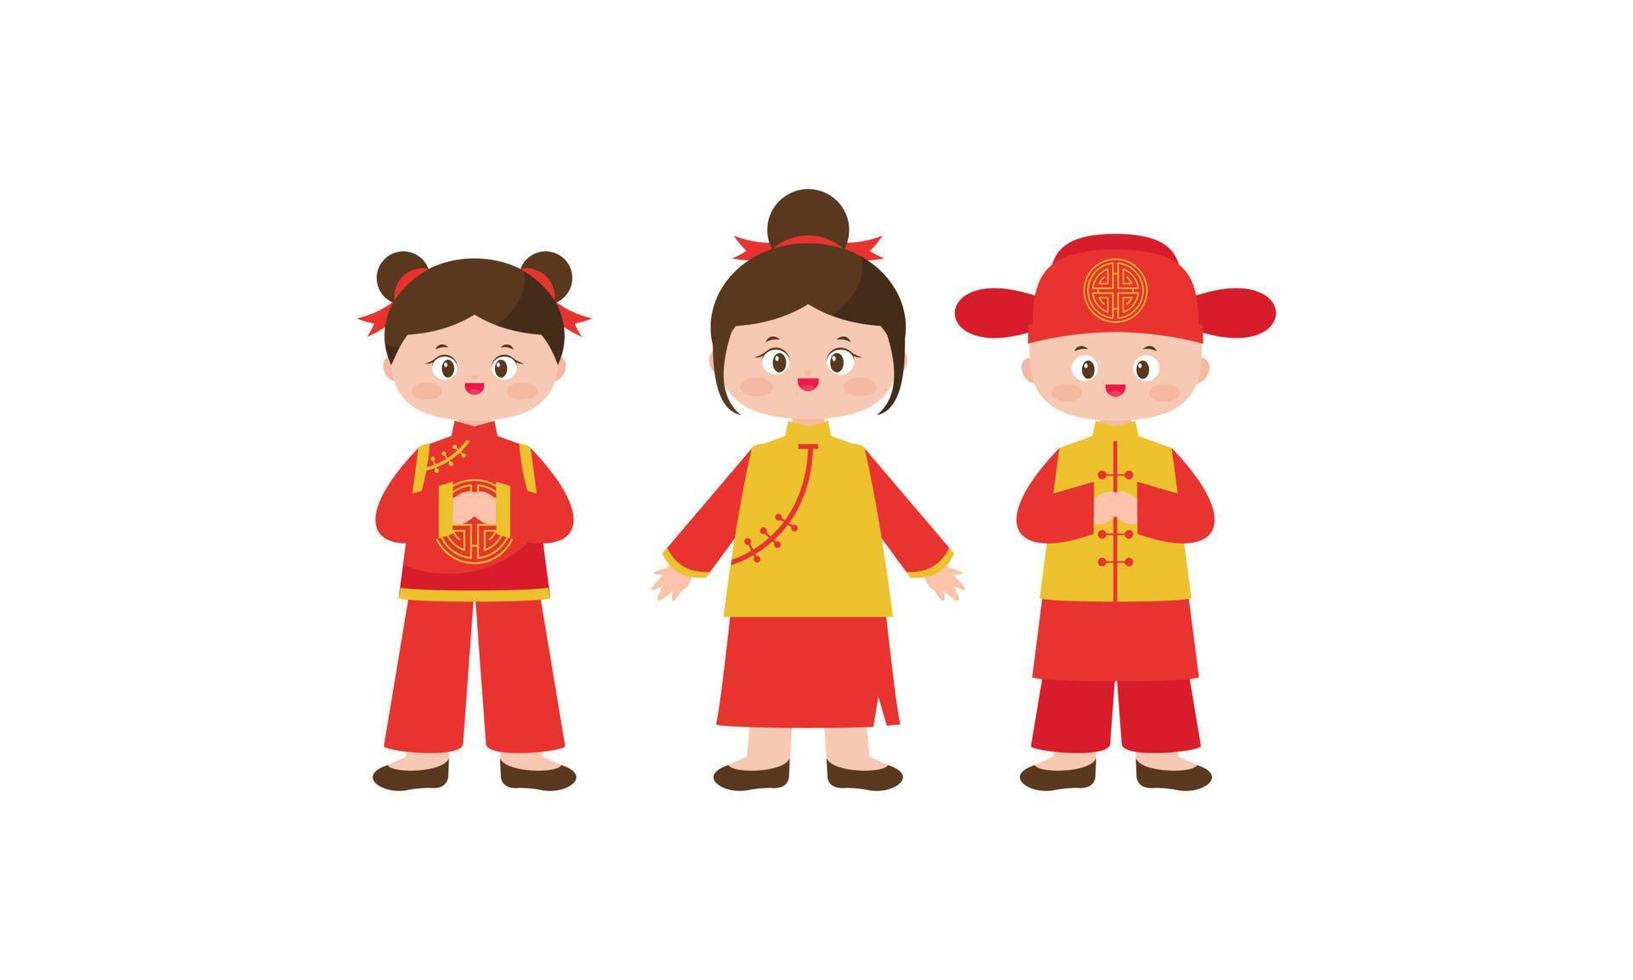 cartão de feliz ano novo chinês com uma criança vestindo trajes tradicionais chineses vetor